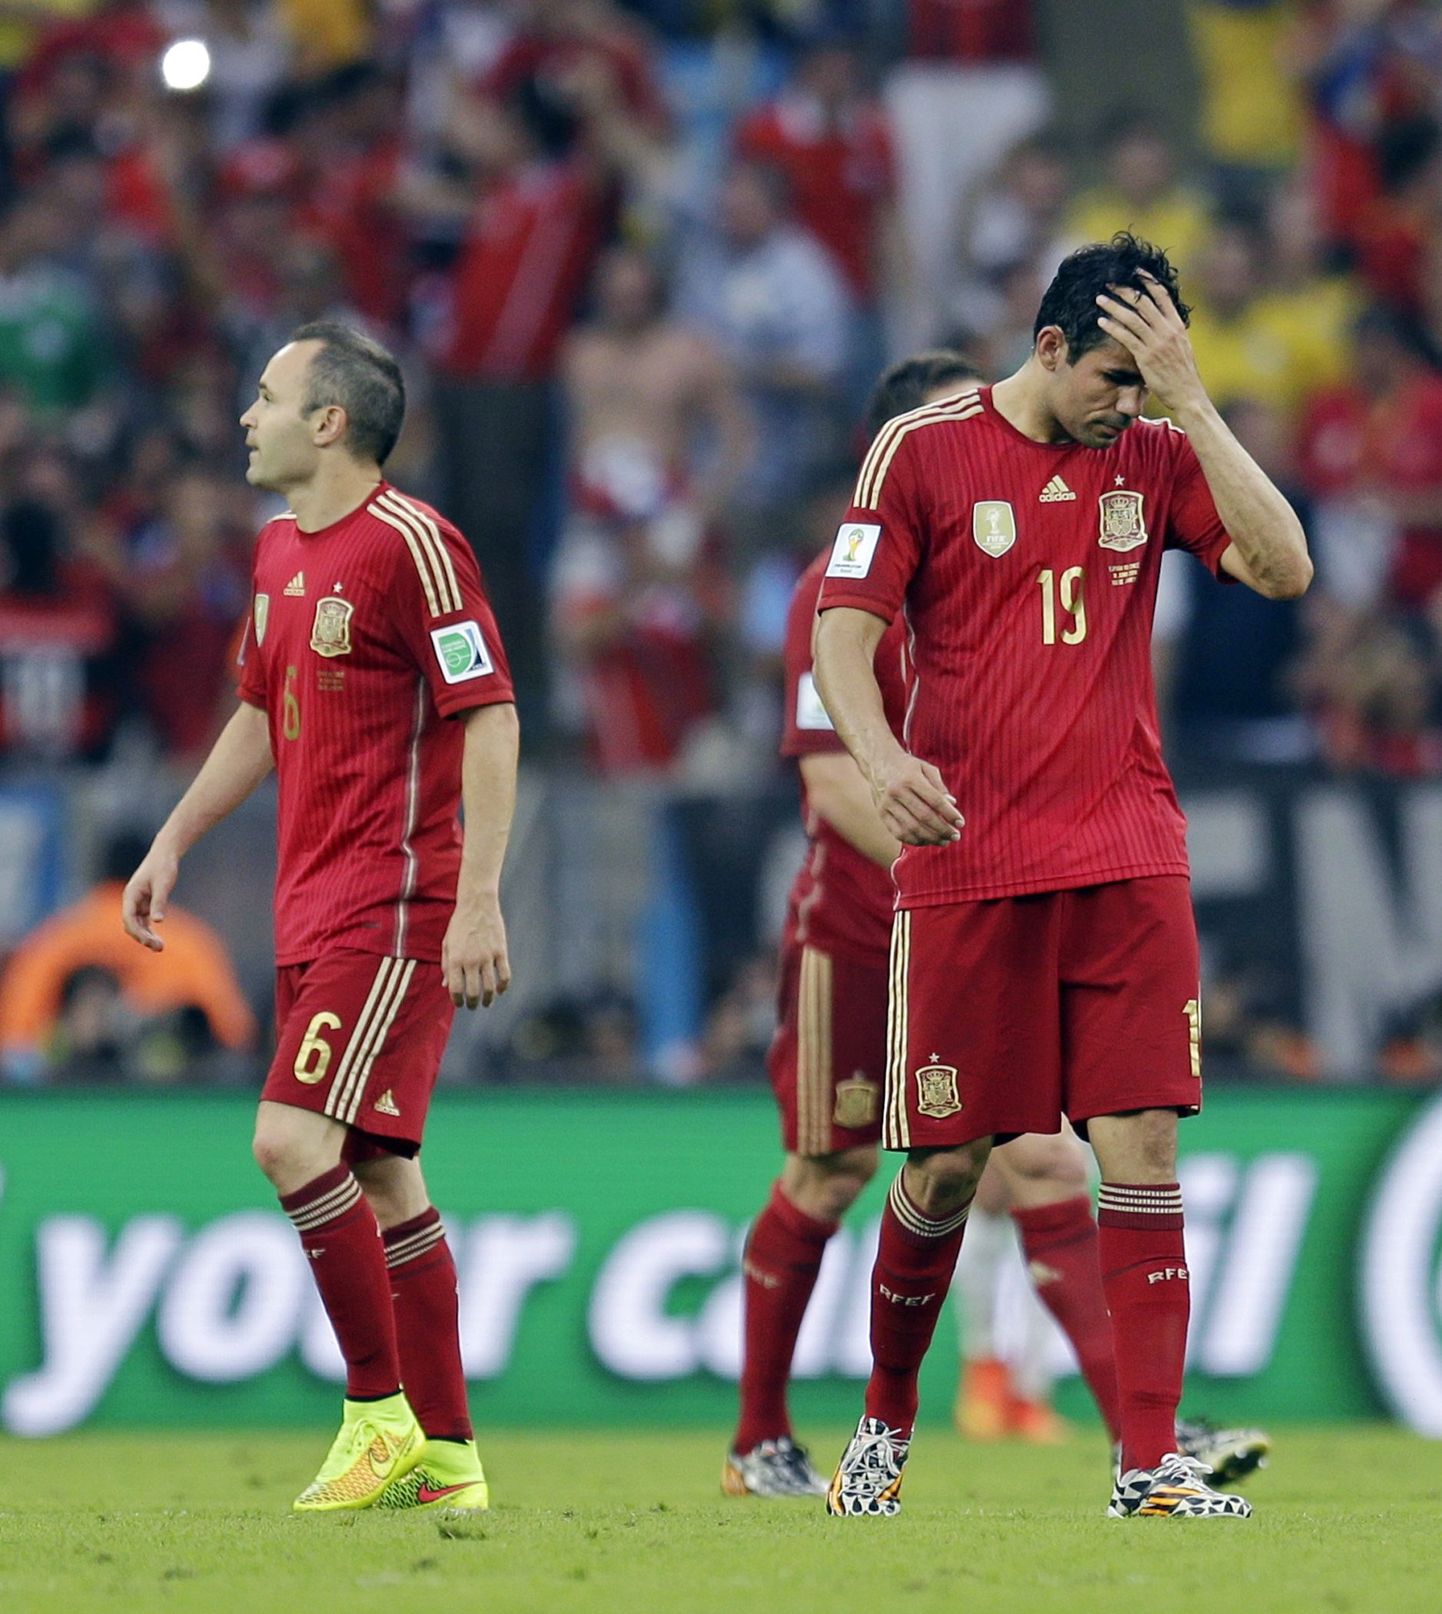 Cборная Испании после поражения в матче с командой Чили (0:2).